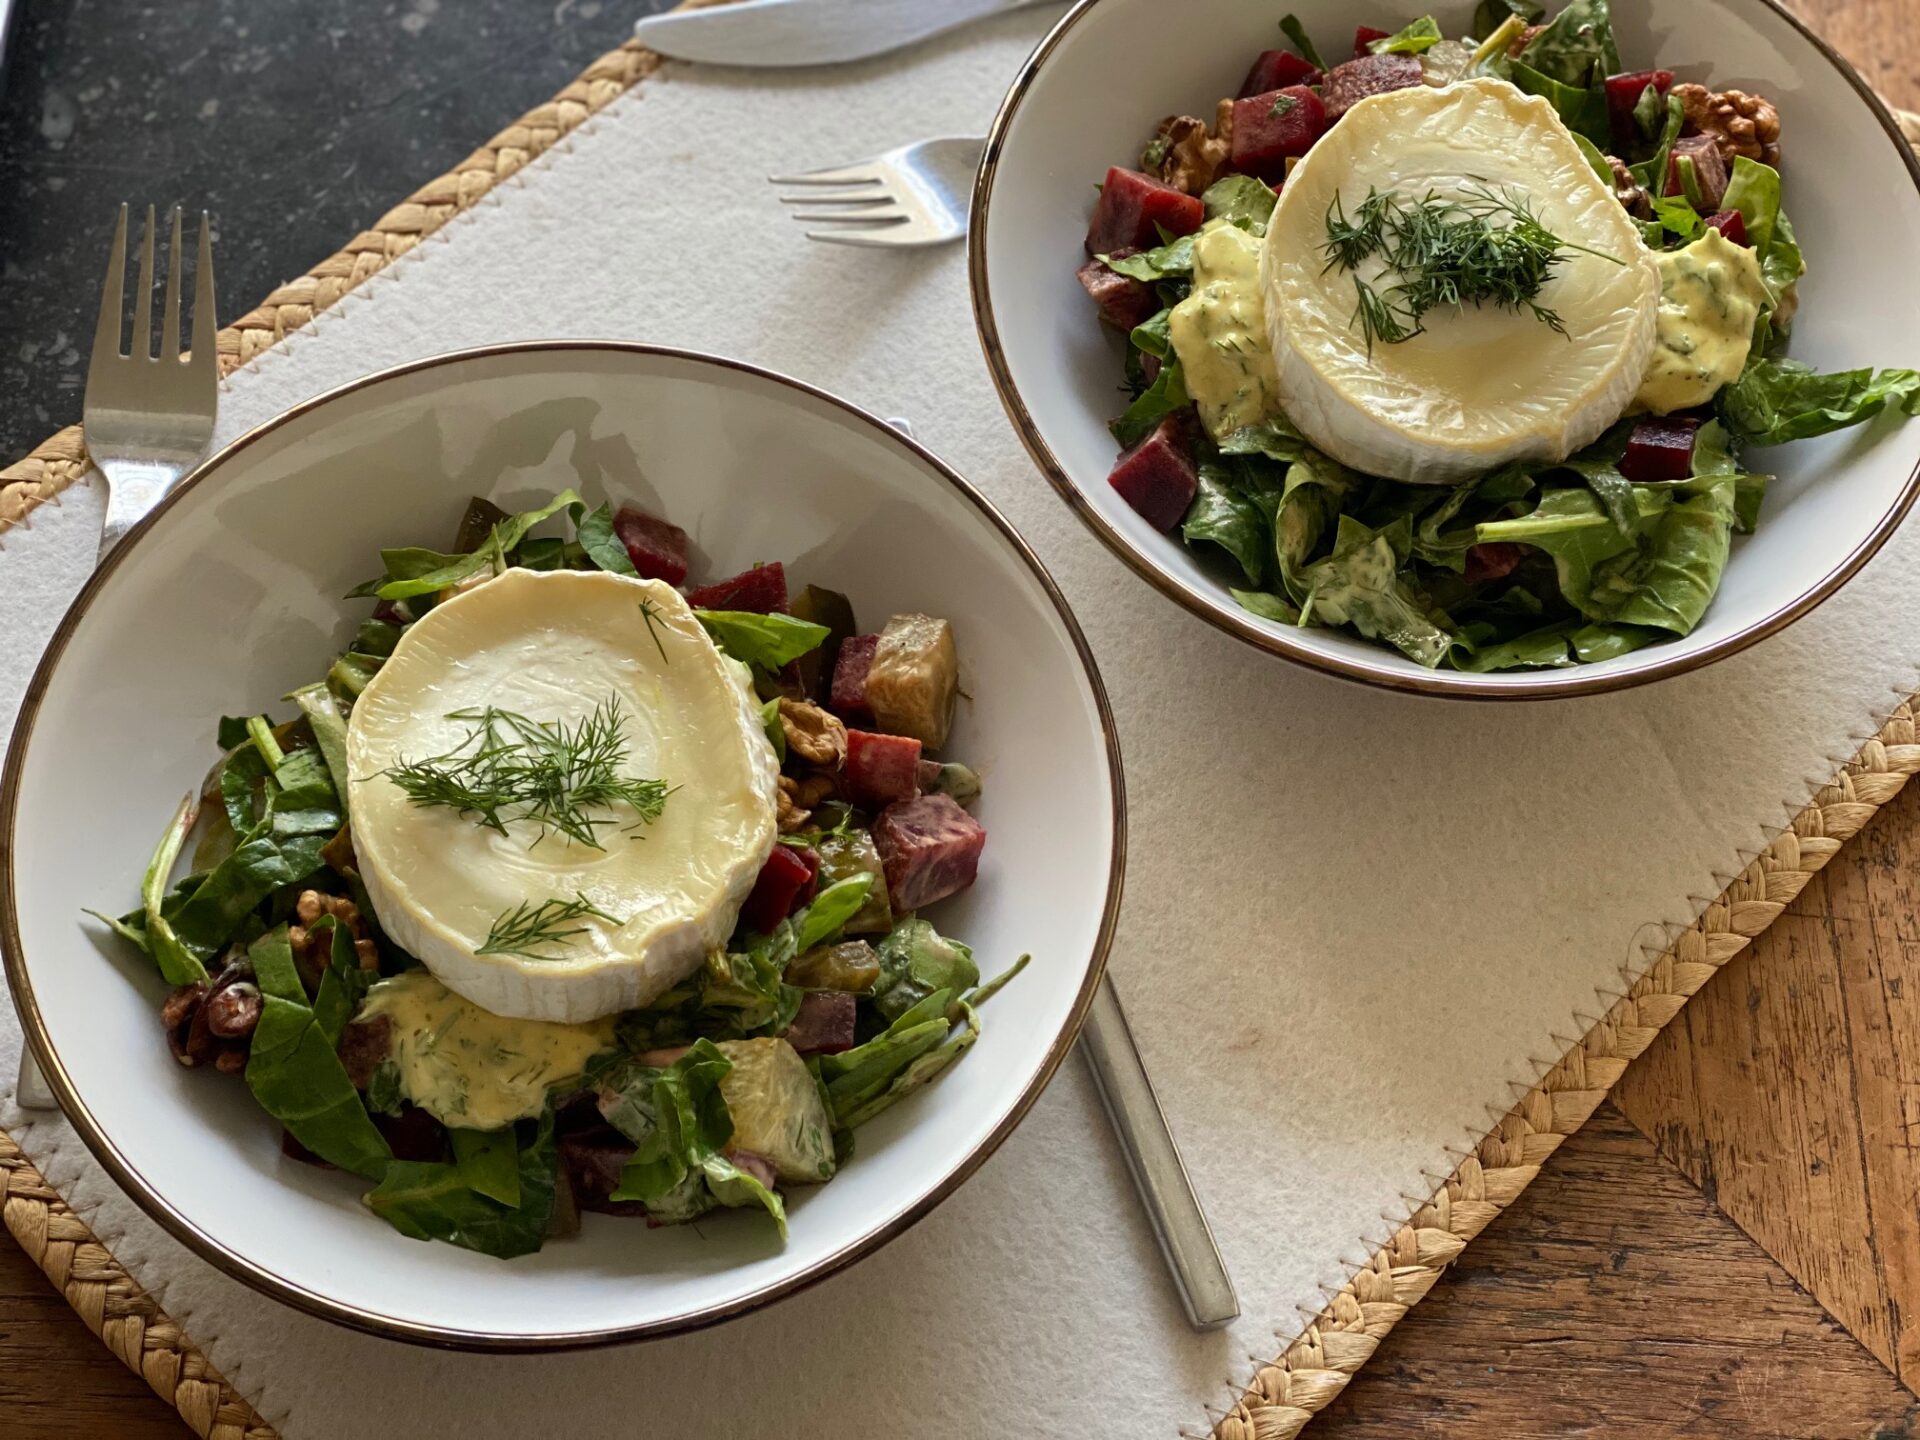 Salade met geitenkaas, bietjes en walnoten met mosterddressing - Foodblog Foodinista